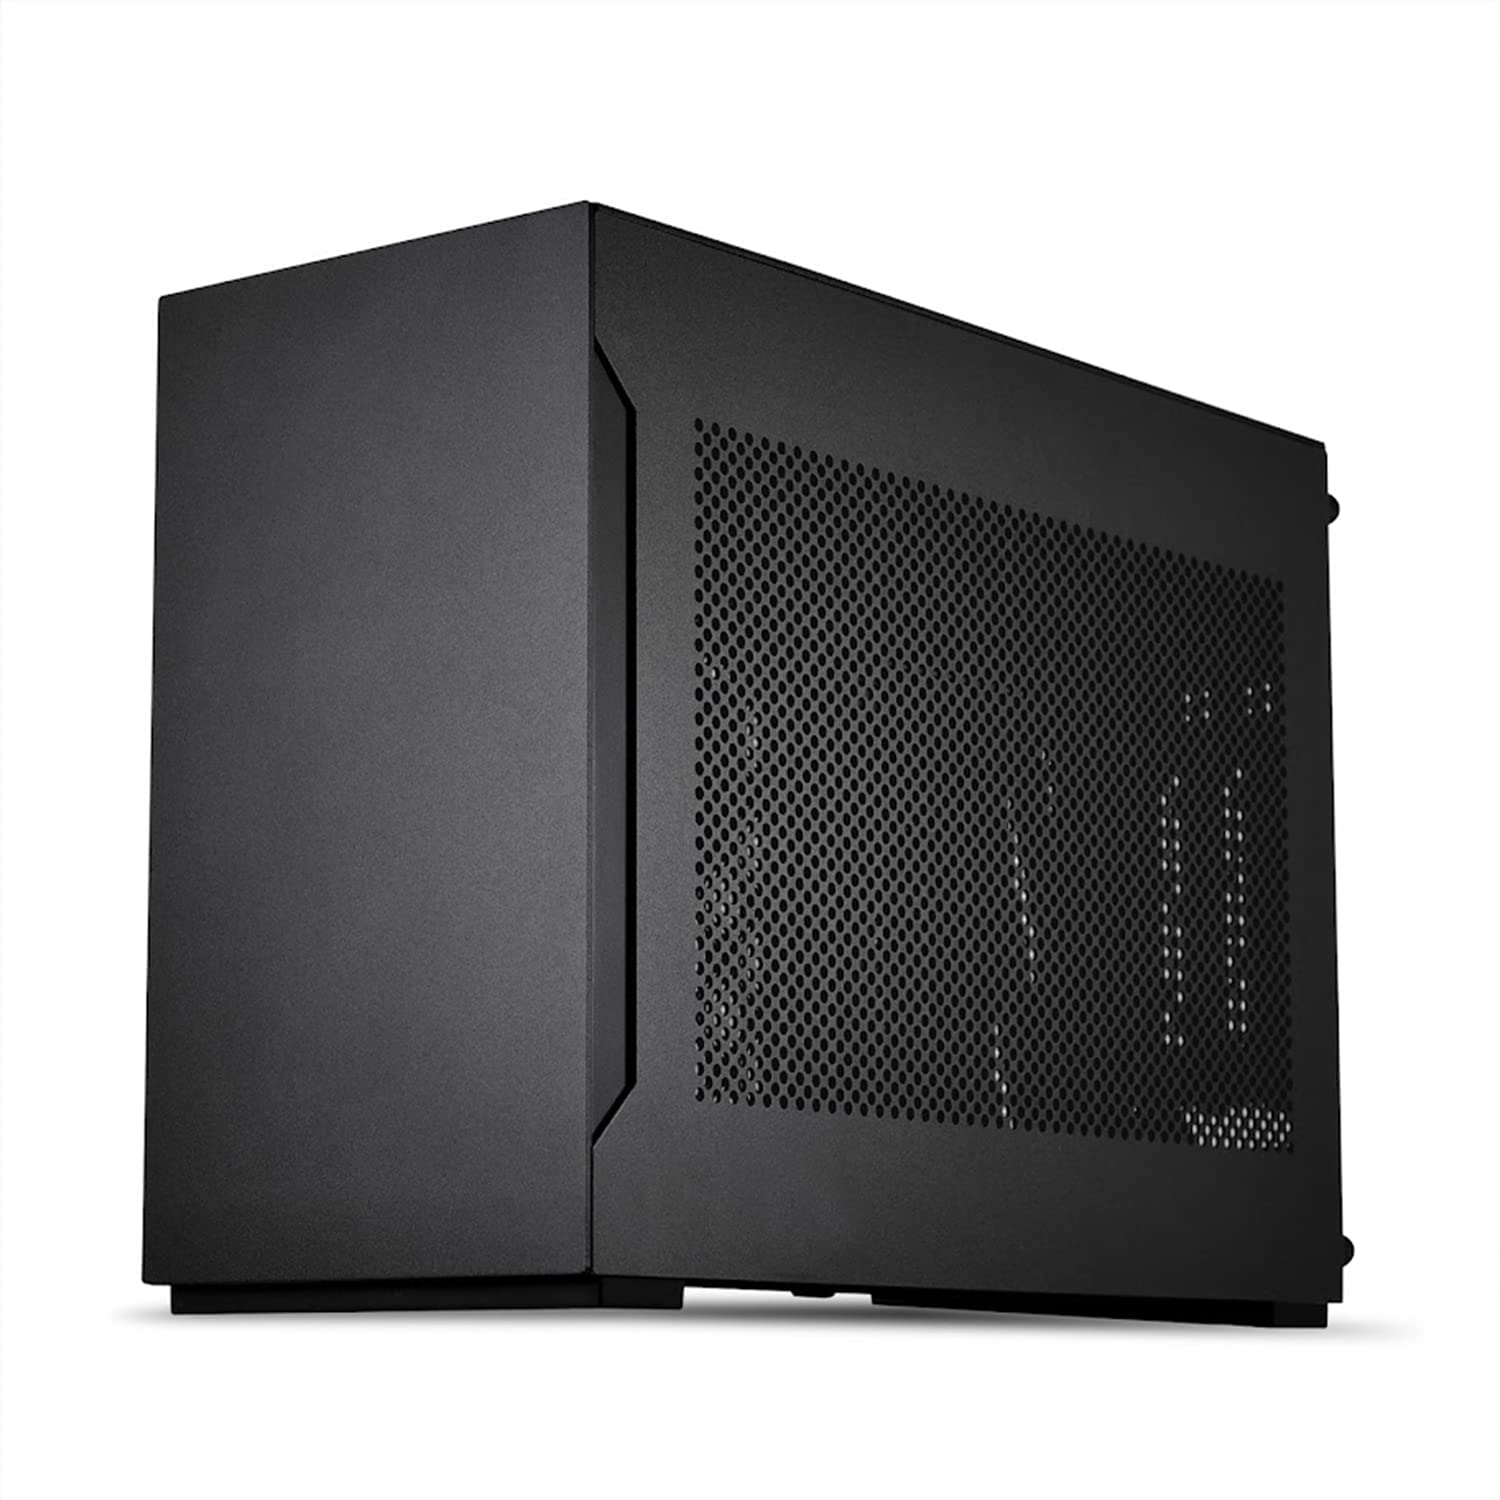 Lian Li A4-H2O mini ITX case Black